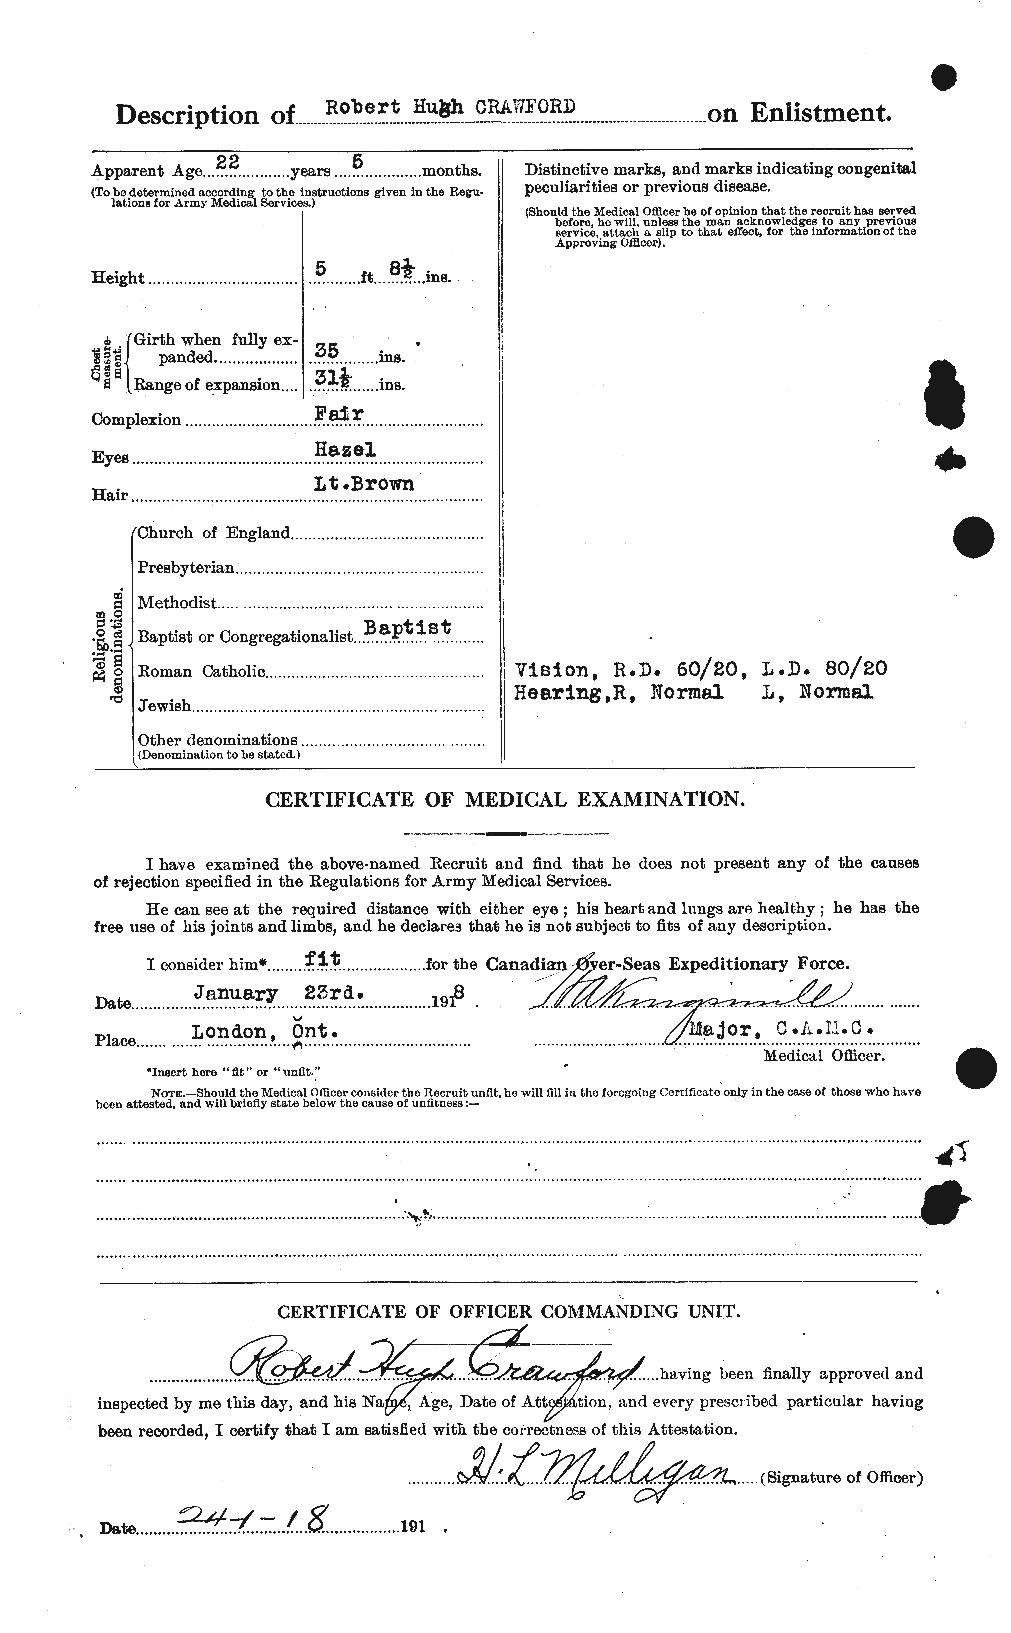 Dossiers du Personnel de la Première Guerre mondiale - CEC 061620b